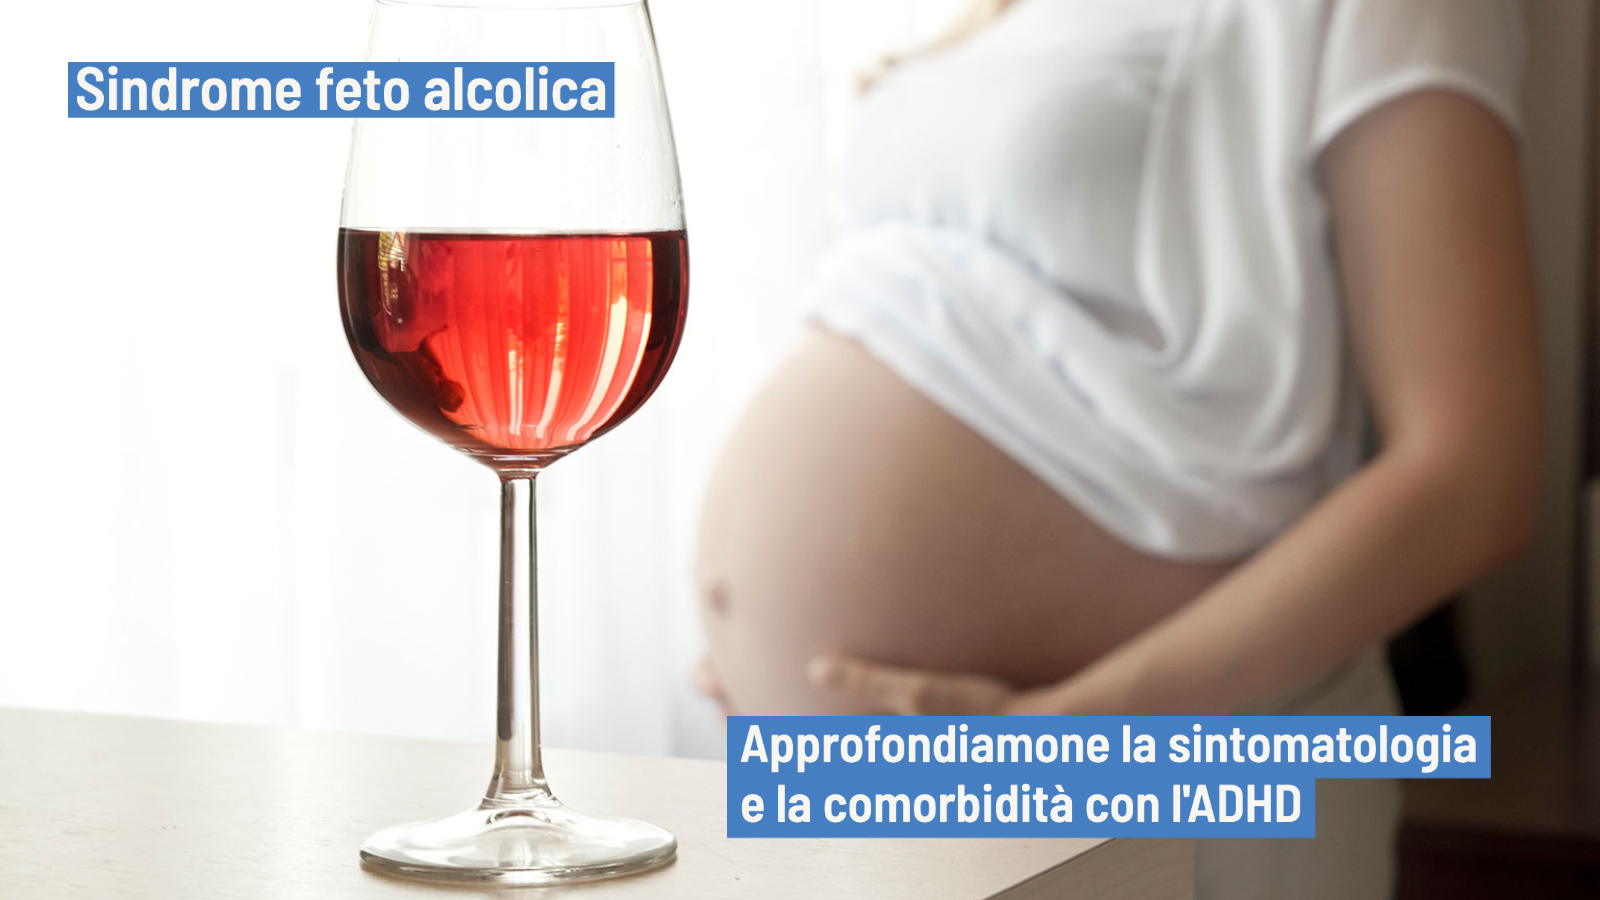 Sindrome feto alcolica: manifestazioni e similitudini con l'ADHD